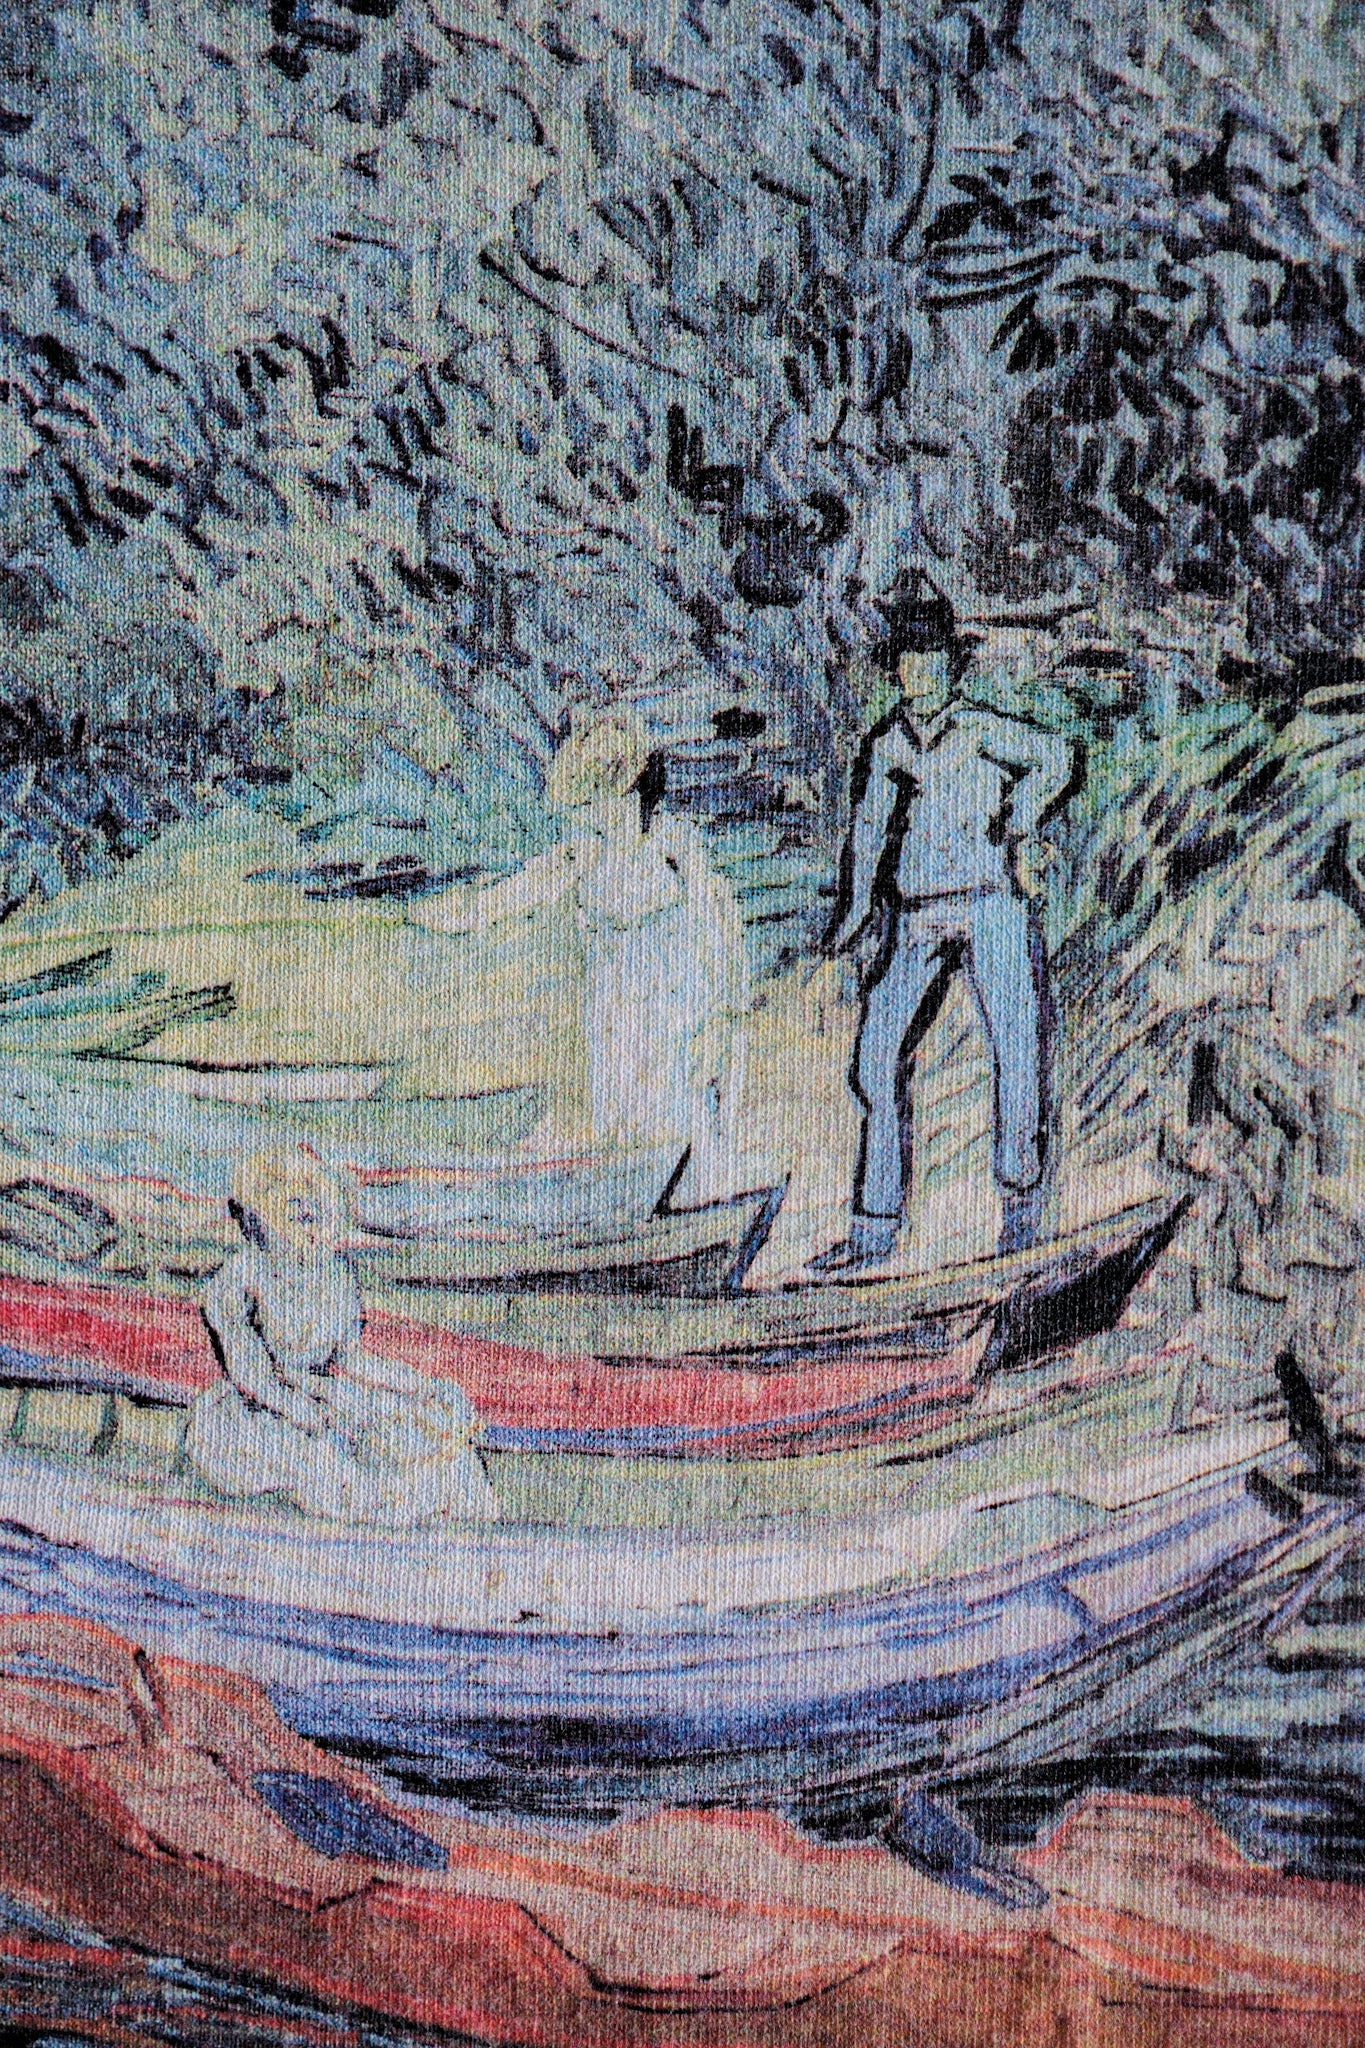 【~00's】Vintage Art Print T-shirt Size.L "Vincent Van Gogh's" "Bank of the Oise at Auvers"